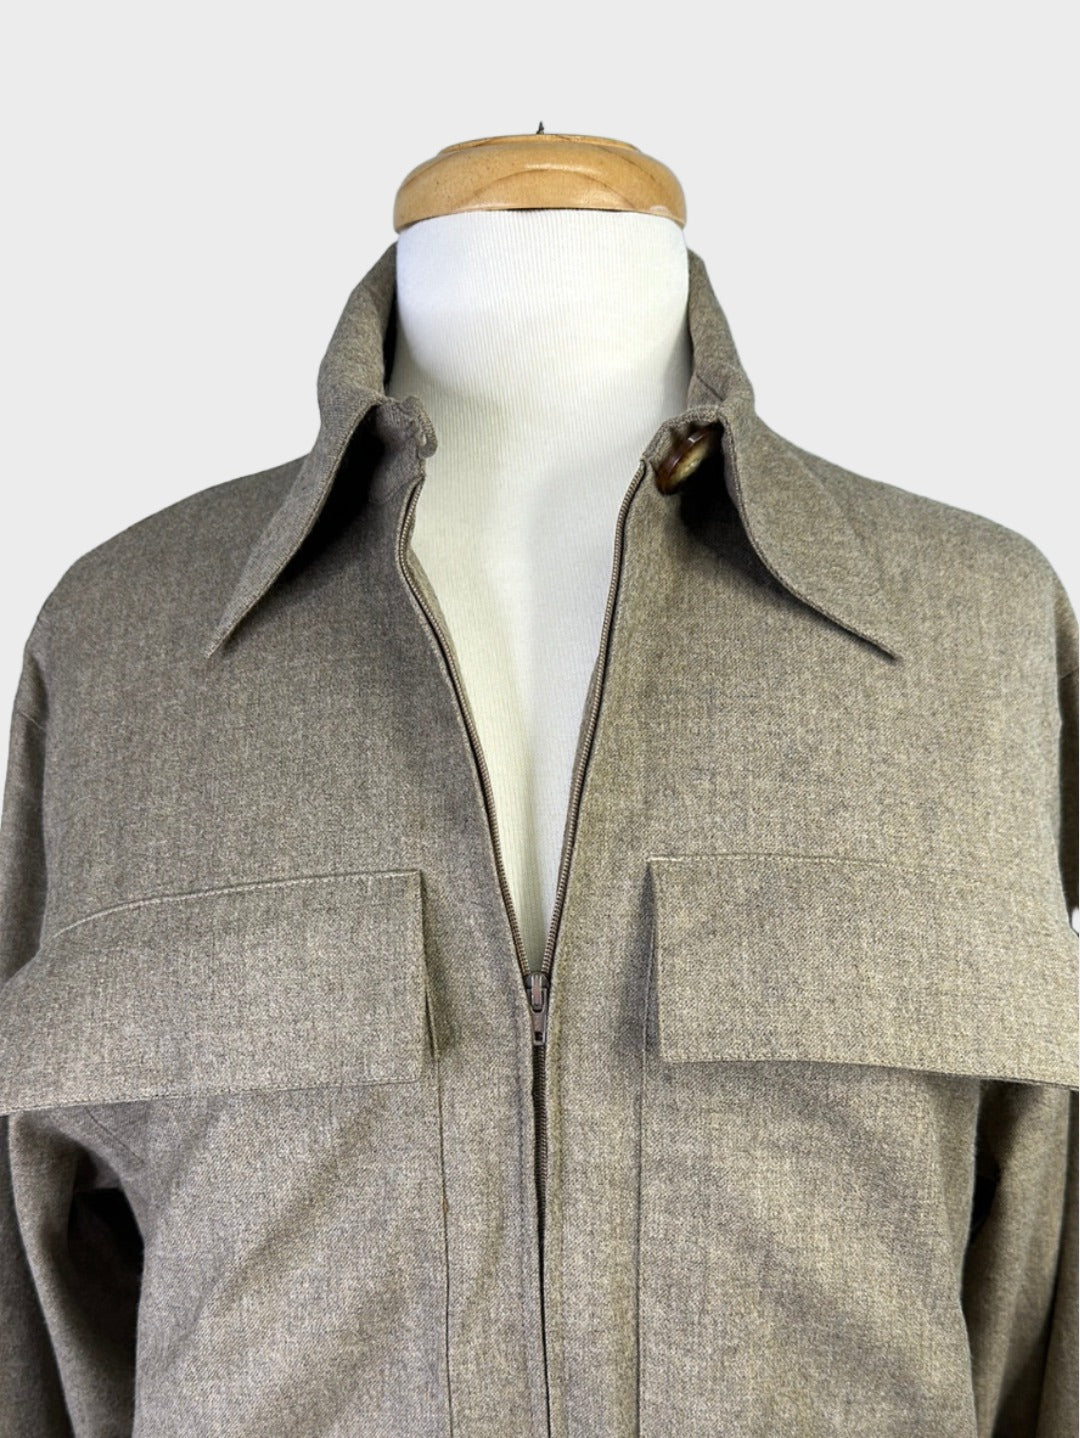 Guy Laroche | Paris | dress | size 10 | knee length | 100% wool